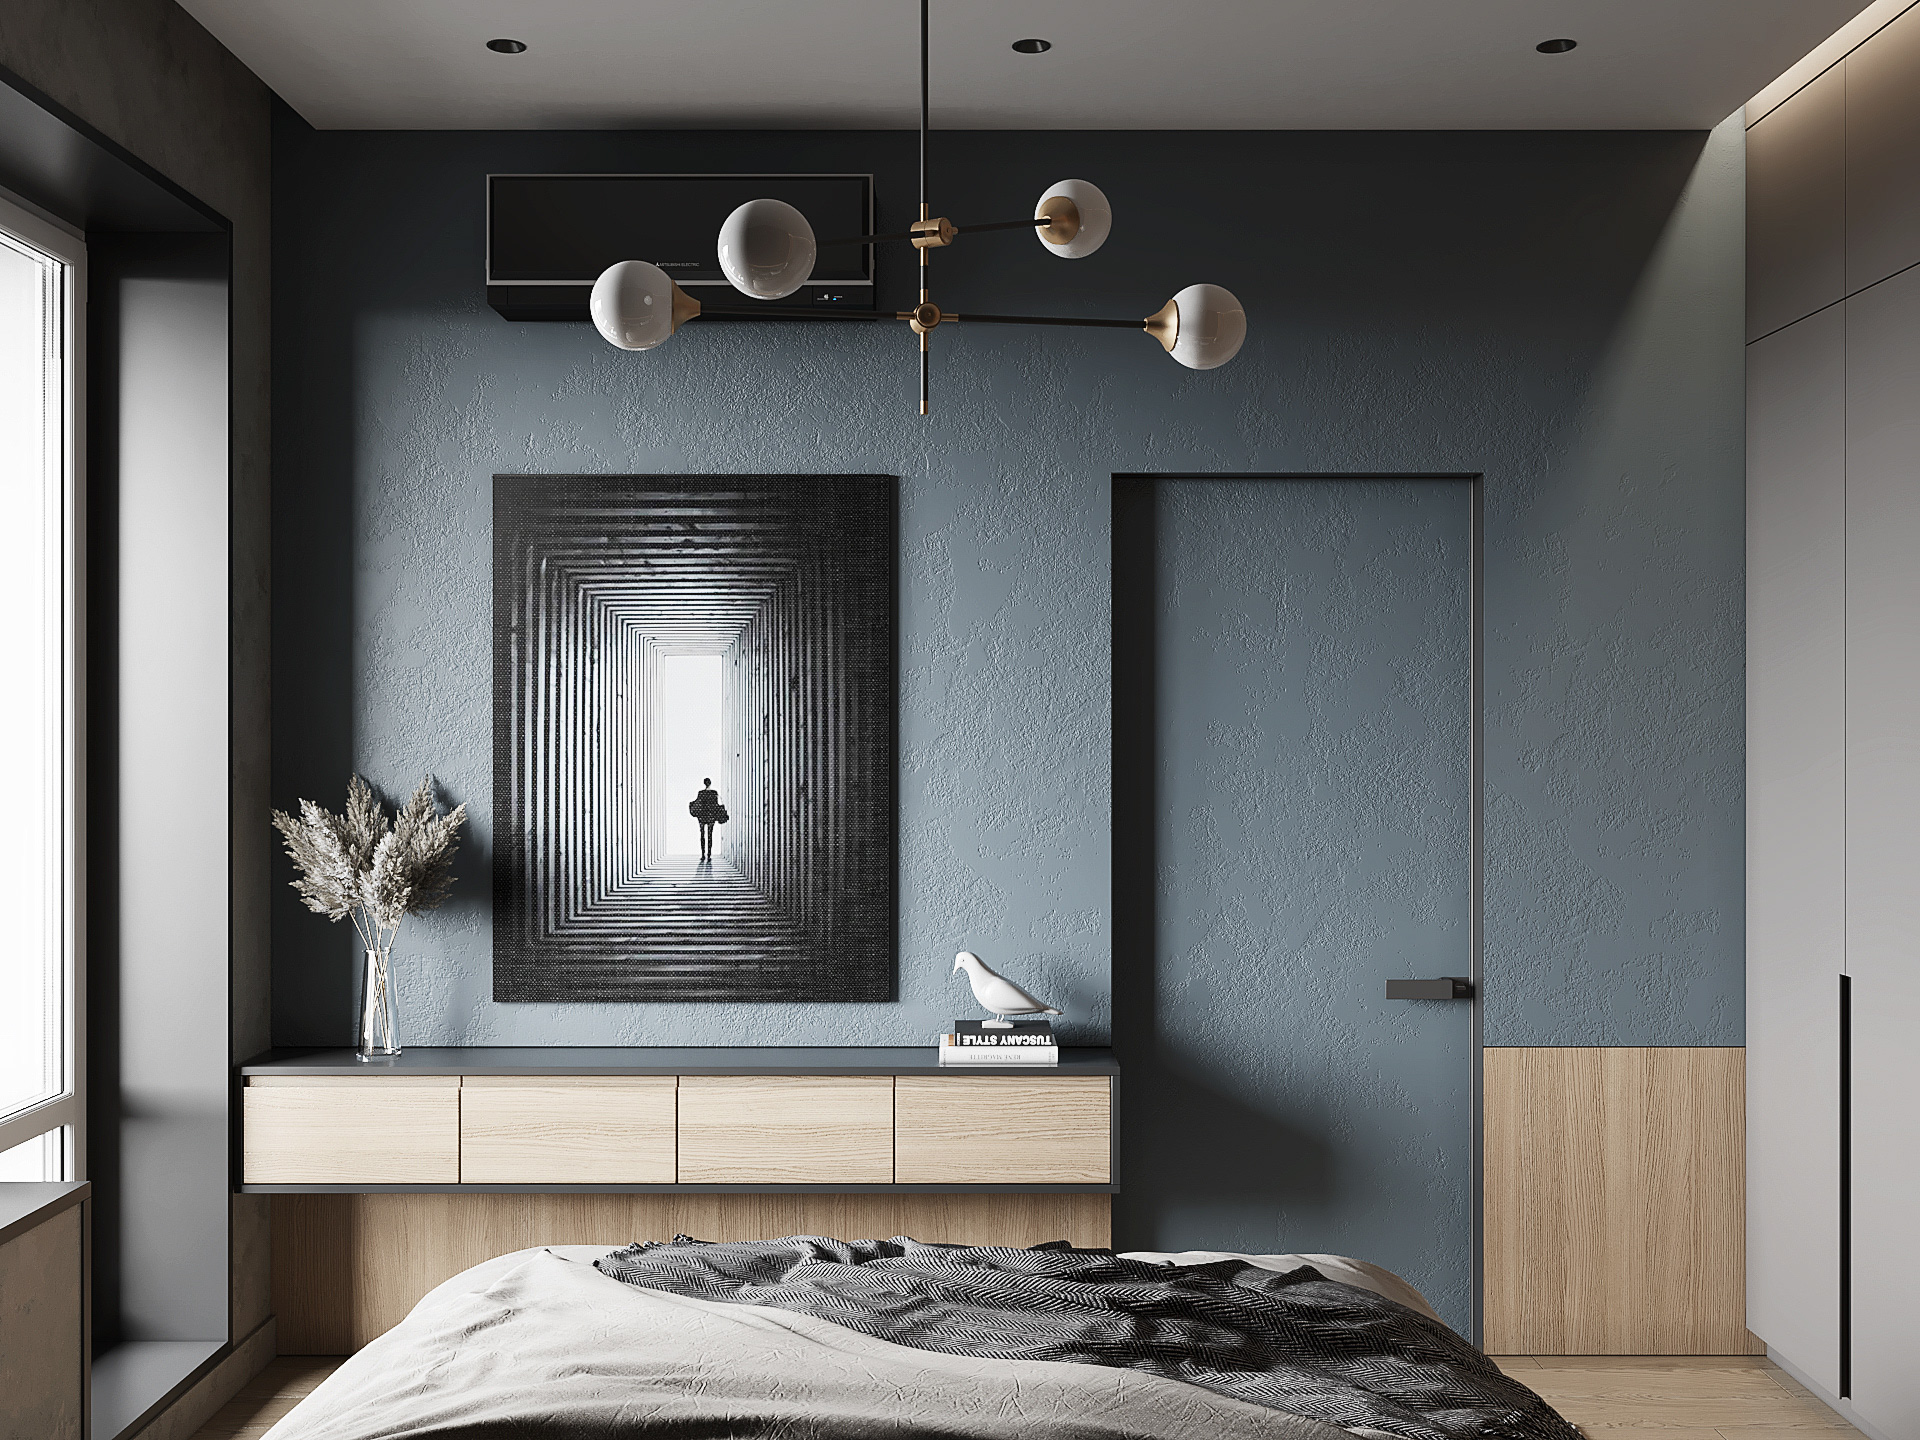  Việc sử dụng thông minh các mảng màu pha trộn giữa đen, xám và màu gỗ giúp phòng ngủ trở nên thú vị và dễ đắm chìm vào giấc ngủ.